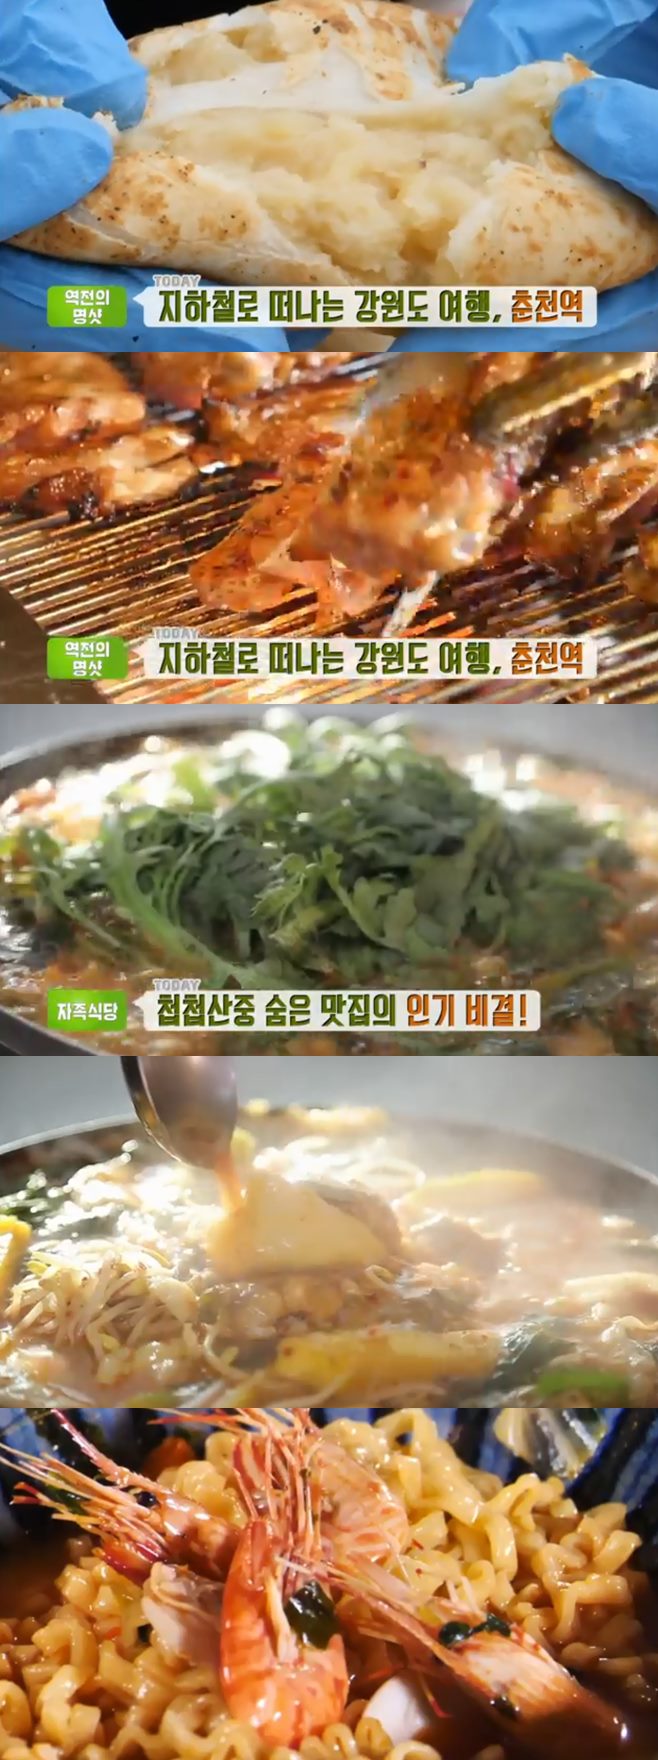 ‘생방송투데이’ 자족식당 메기매운탕(양어장집)+꽃새우영번지+타이거새우구이(양화진)+춘천감자빵 맛집